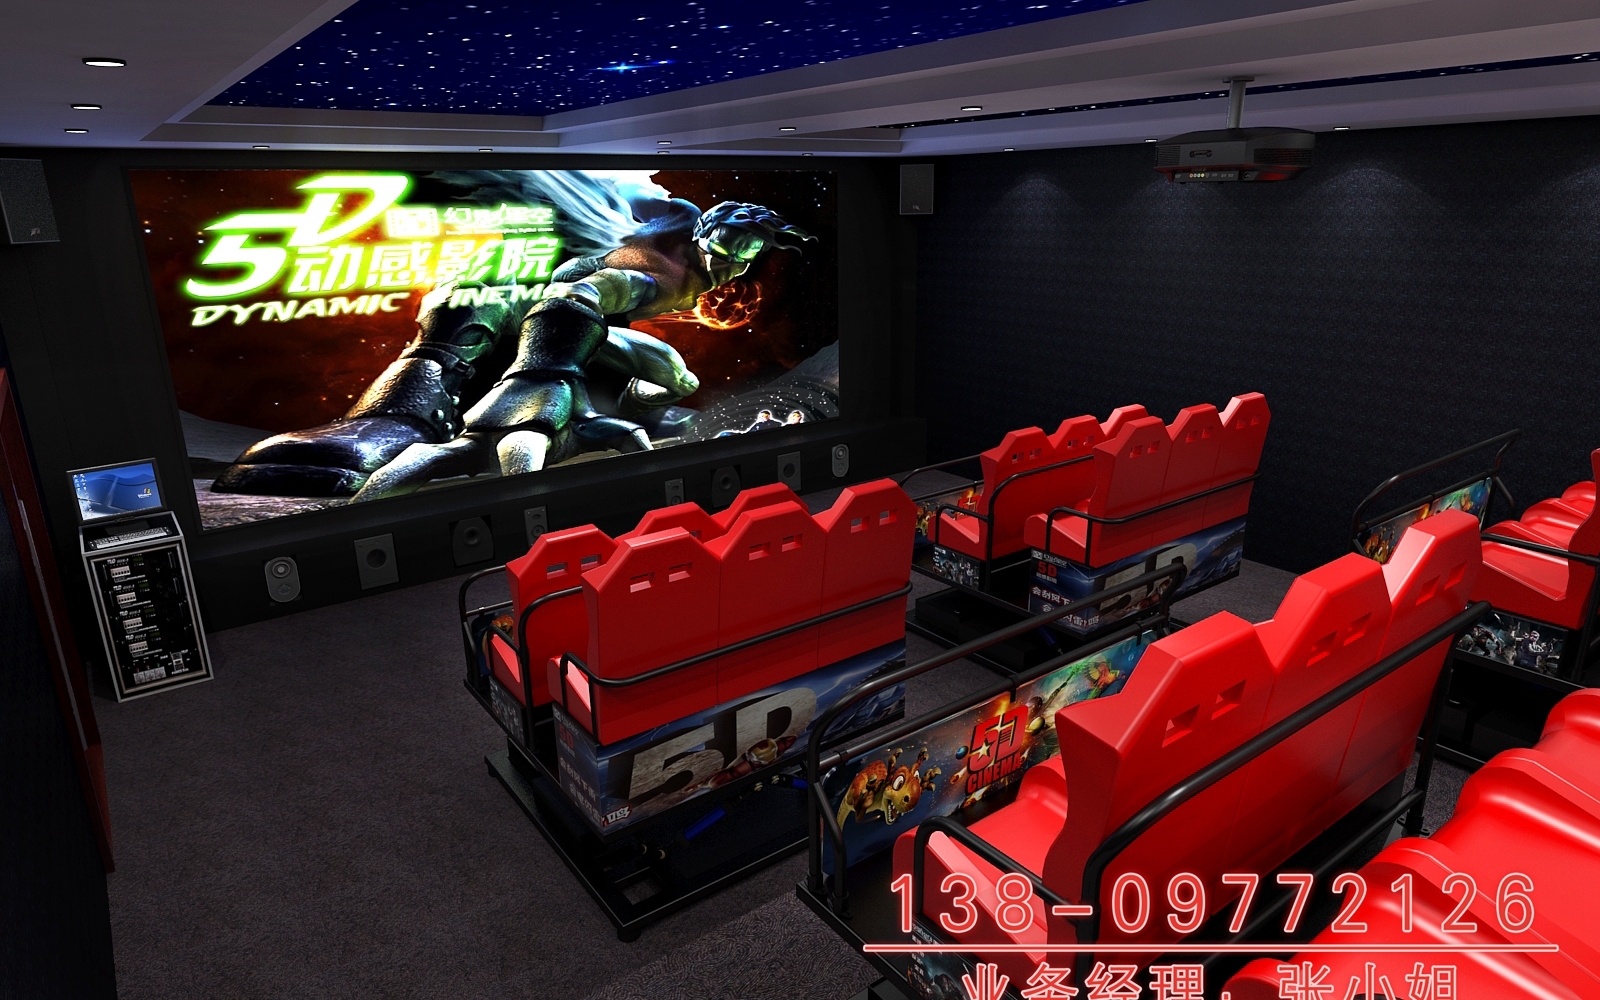 9DVR虚拟现实游戏设备、广州虚拟现实游戏、幻影星空厂家幻影星空5D7D动感影院图片